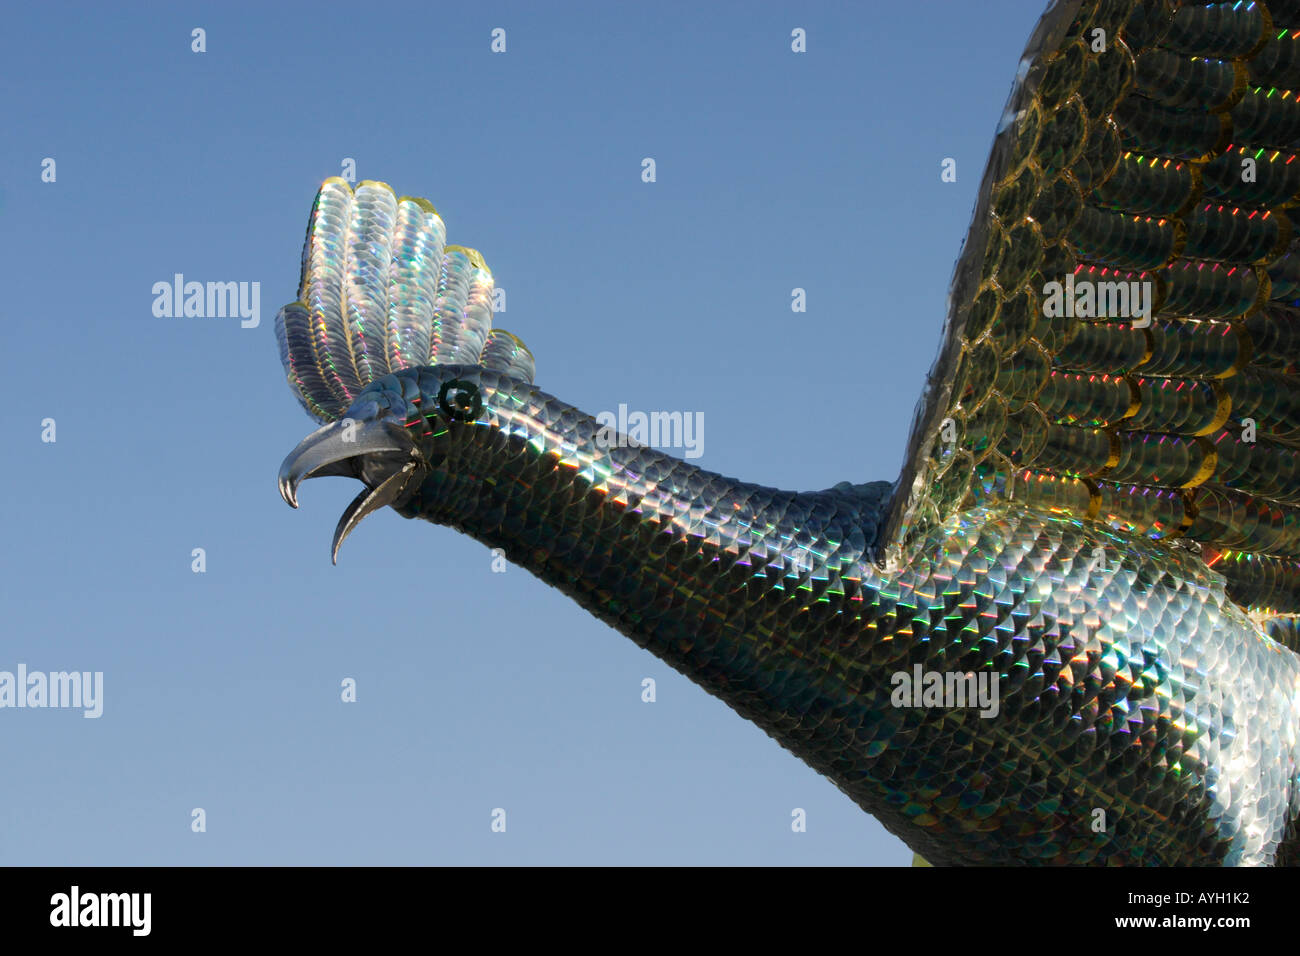 Gran ave fénix hecha mediante compact disc Foto de stock